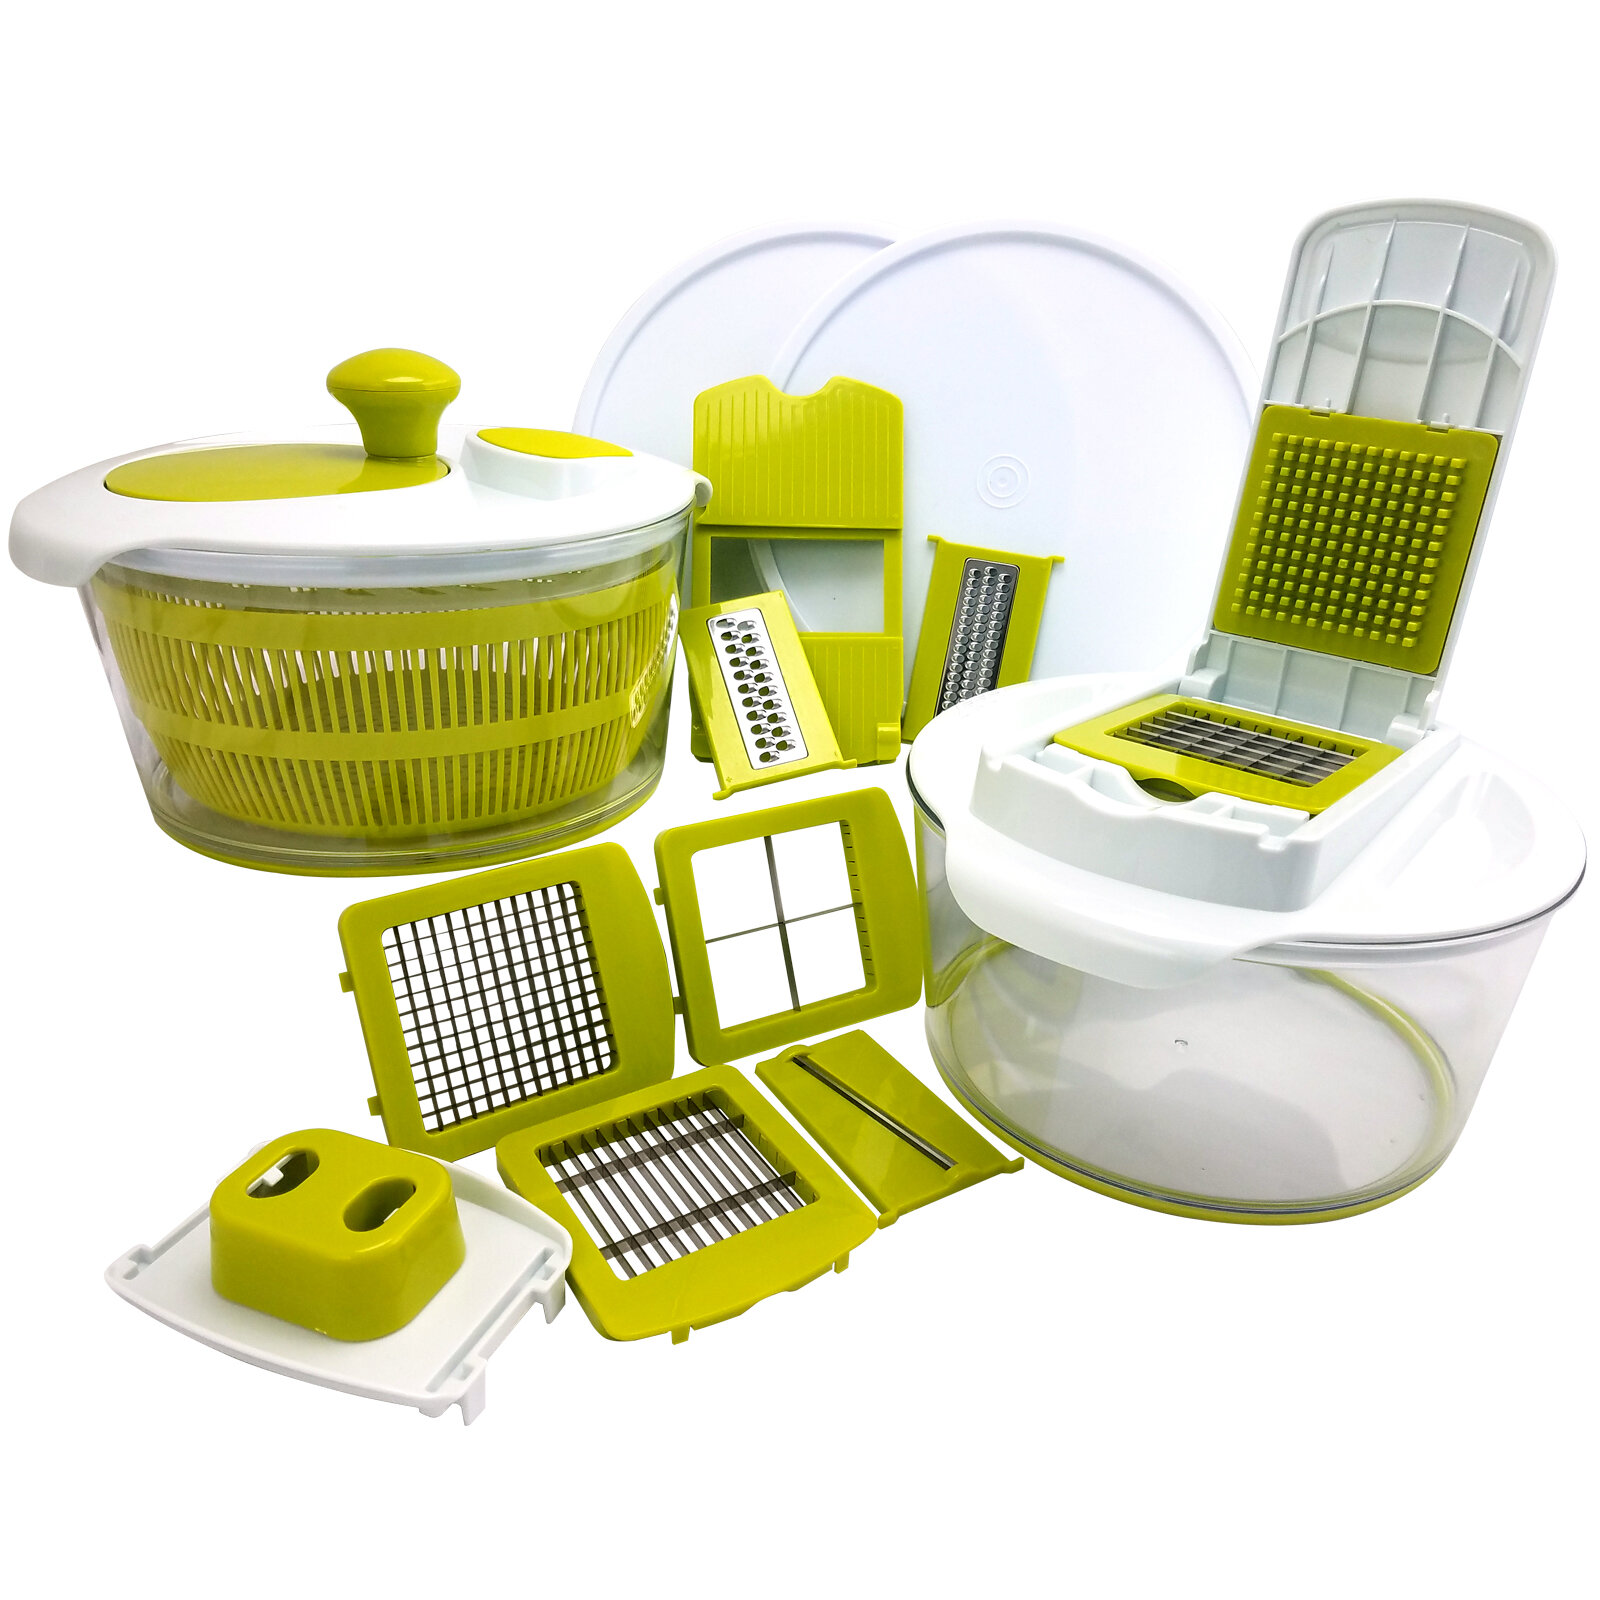 https://assets.wfcdn.com/im/66848173/compr-r85/4859/48597305/mega-chef-17-piece-salad-spinning-slicer-dicer-and-chopper-set.jpg